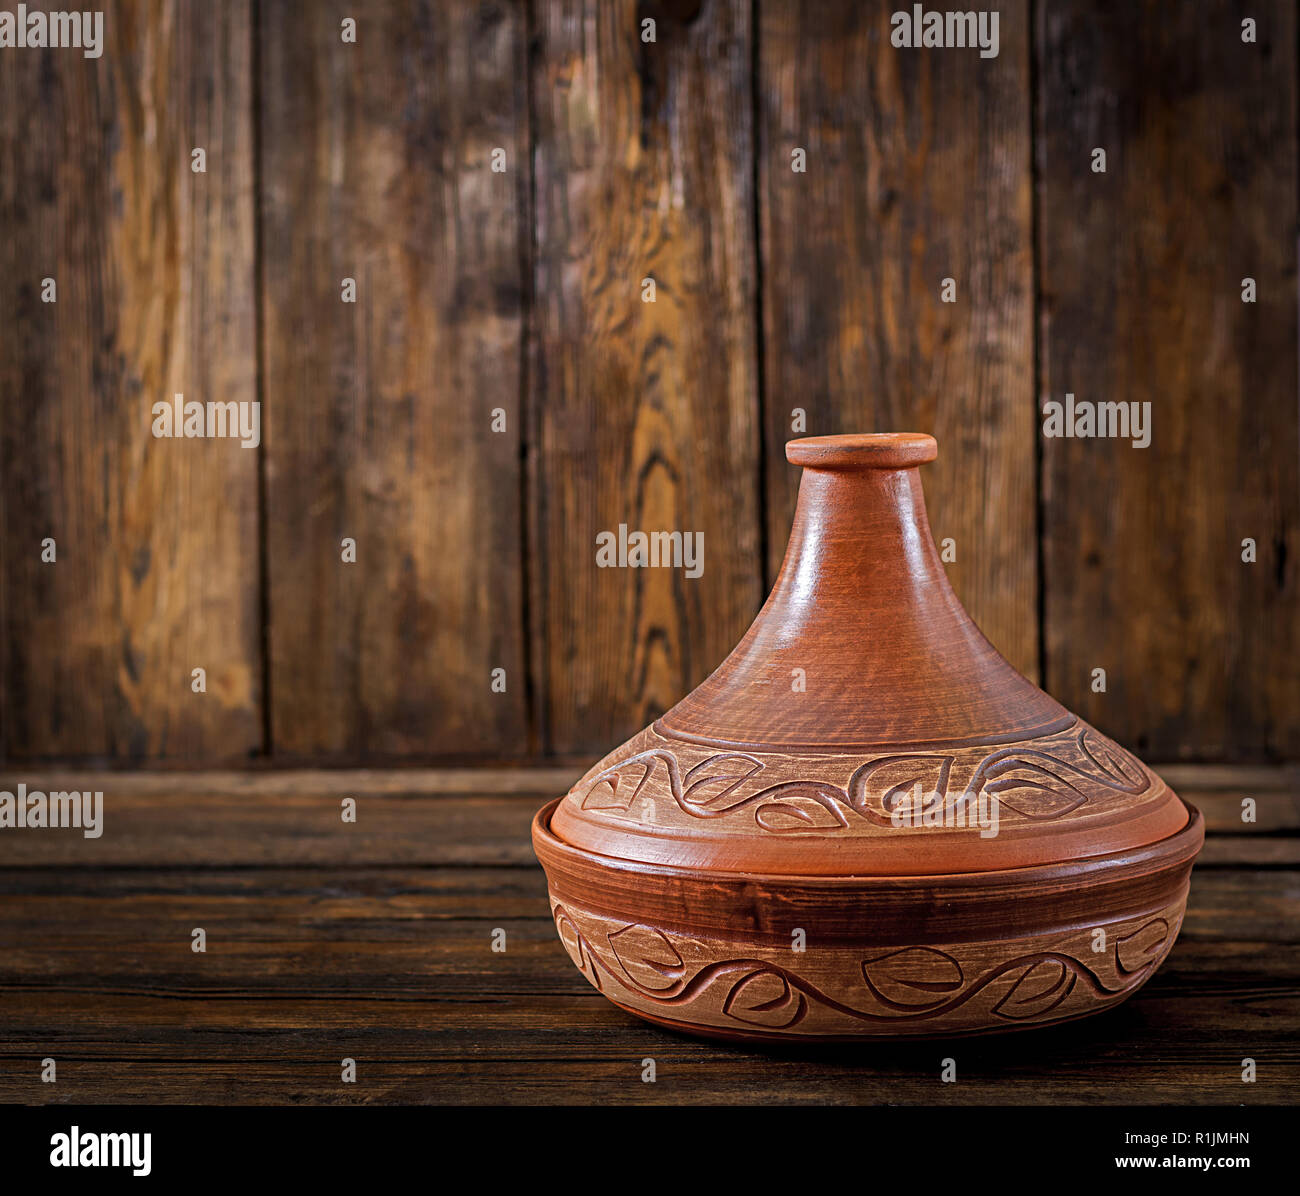 Tajine marocain (récipient pour la cuisson) sur une table en bois. Copy space Banque D'Images